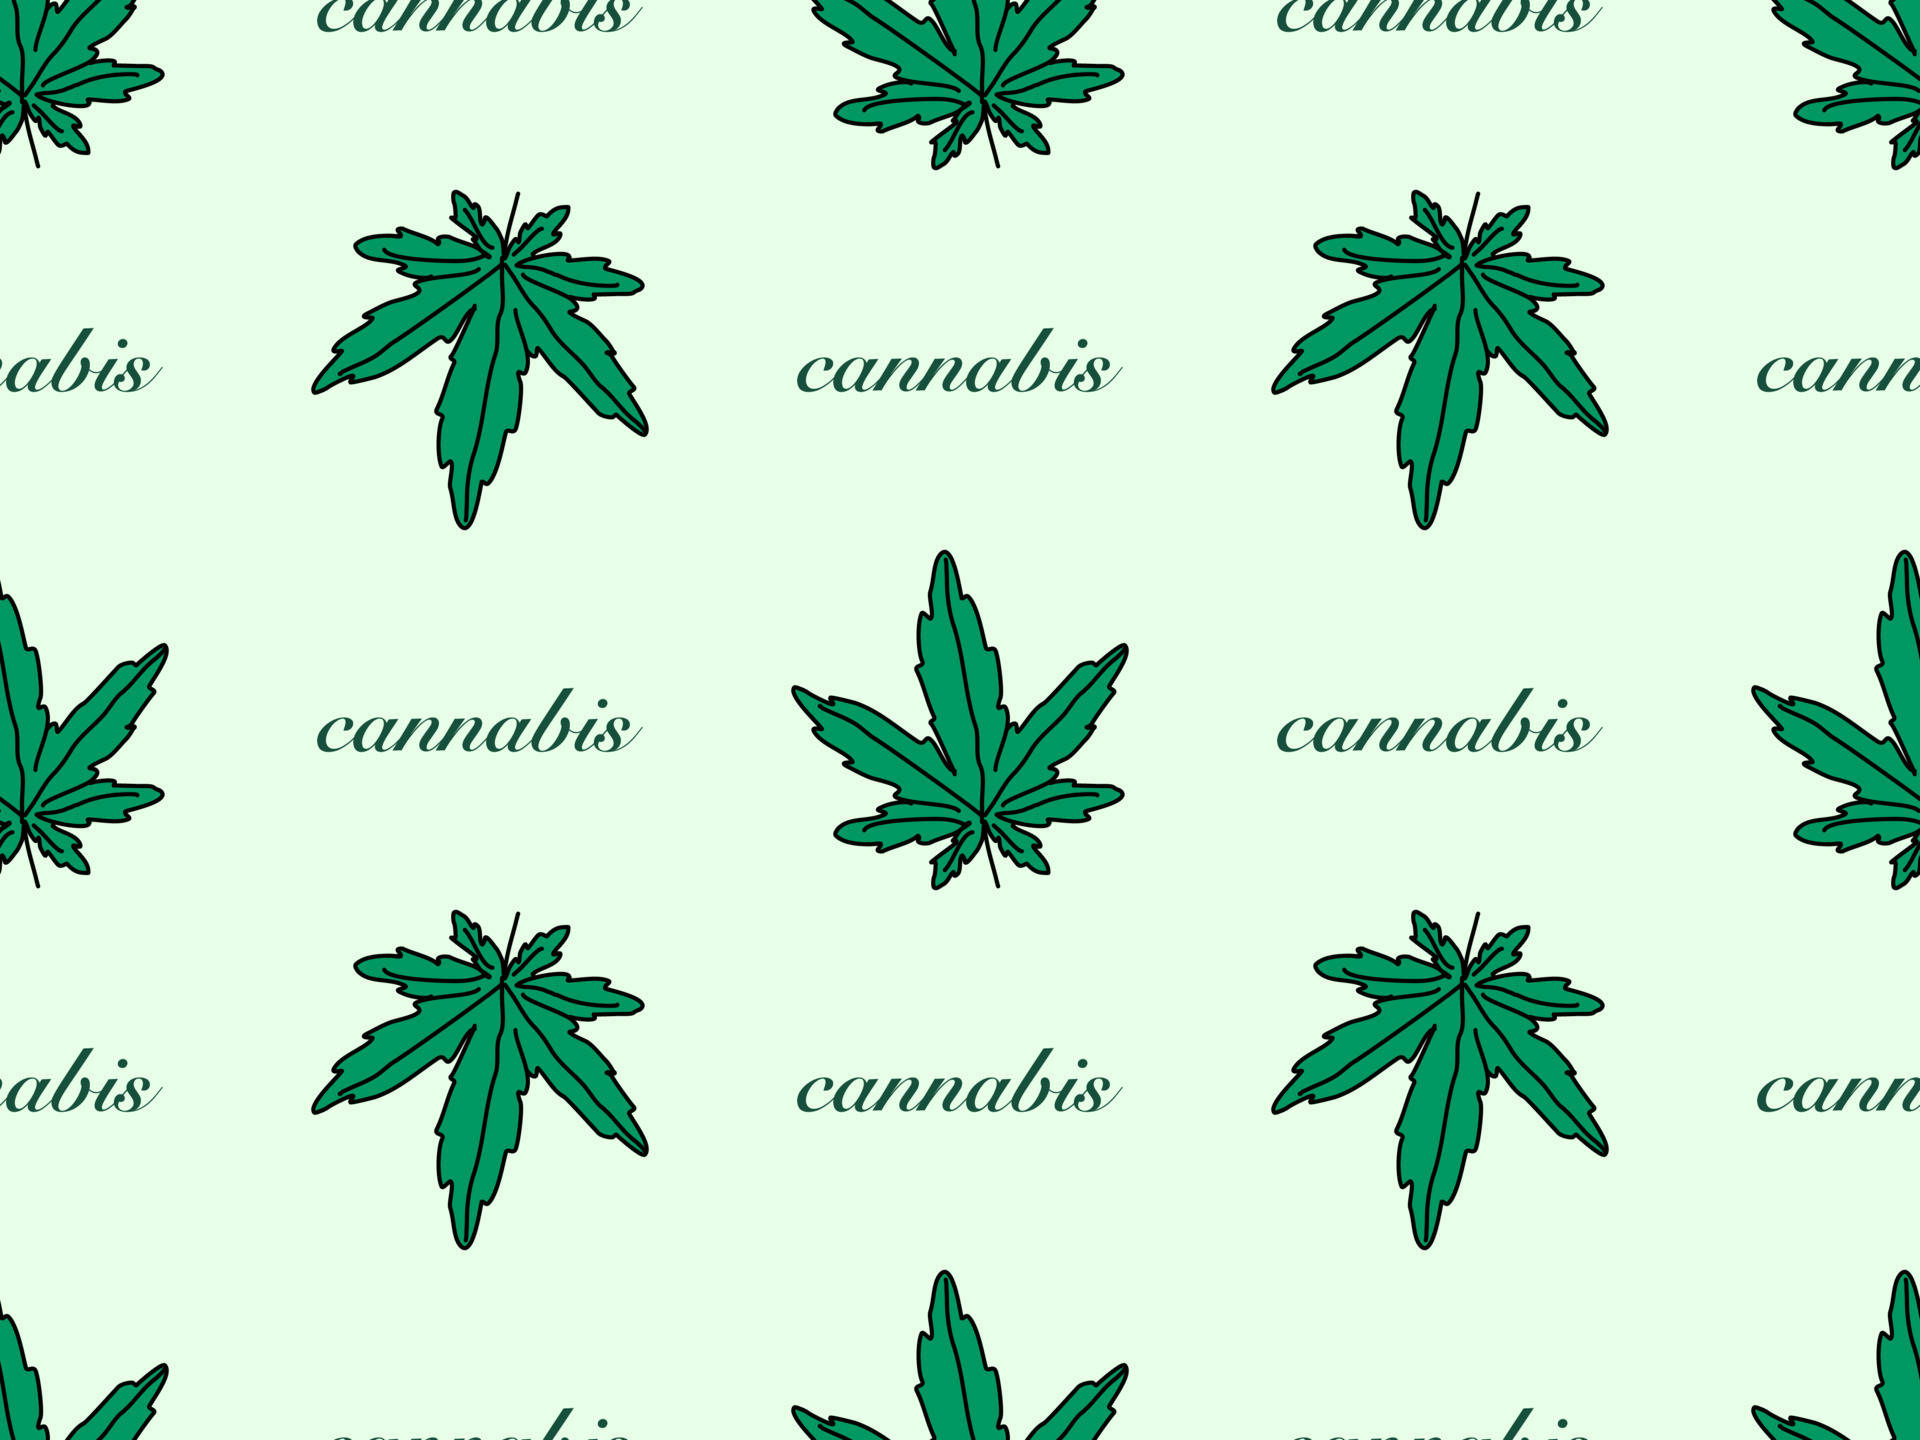 Feieredie Cannabis-kultur Wallpaper